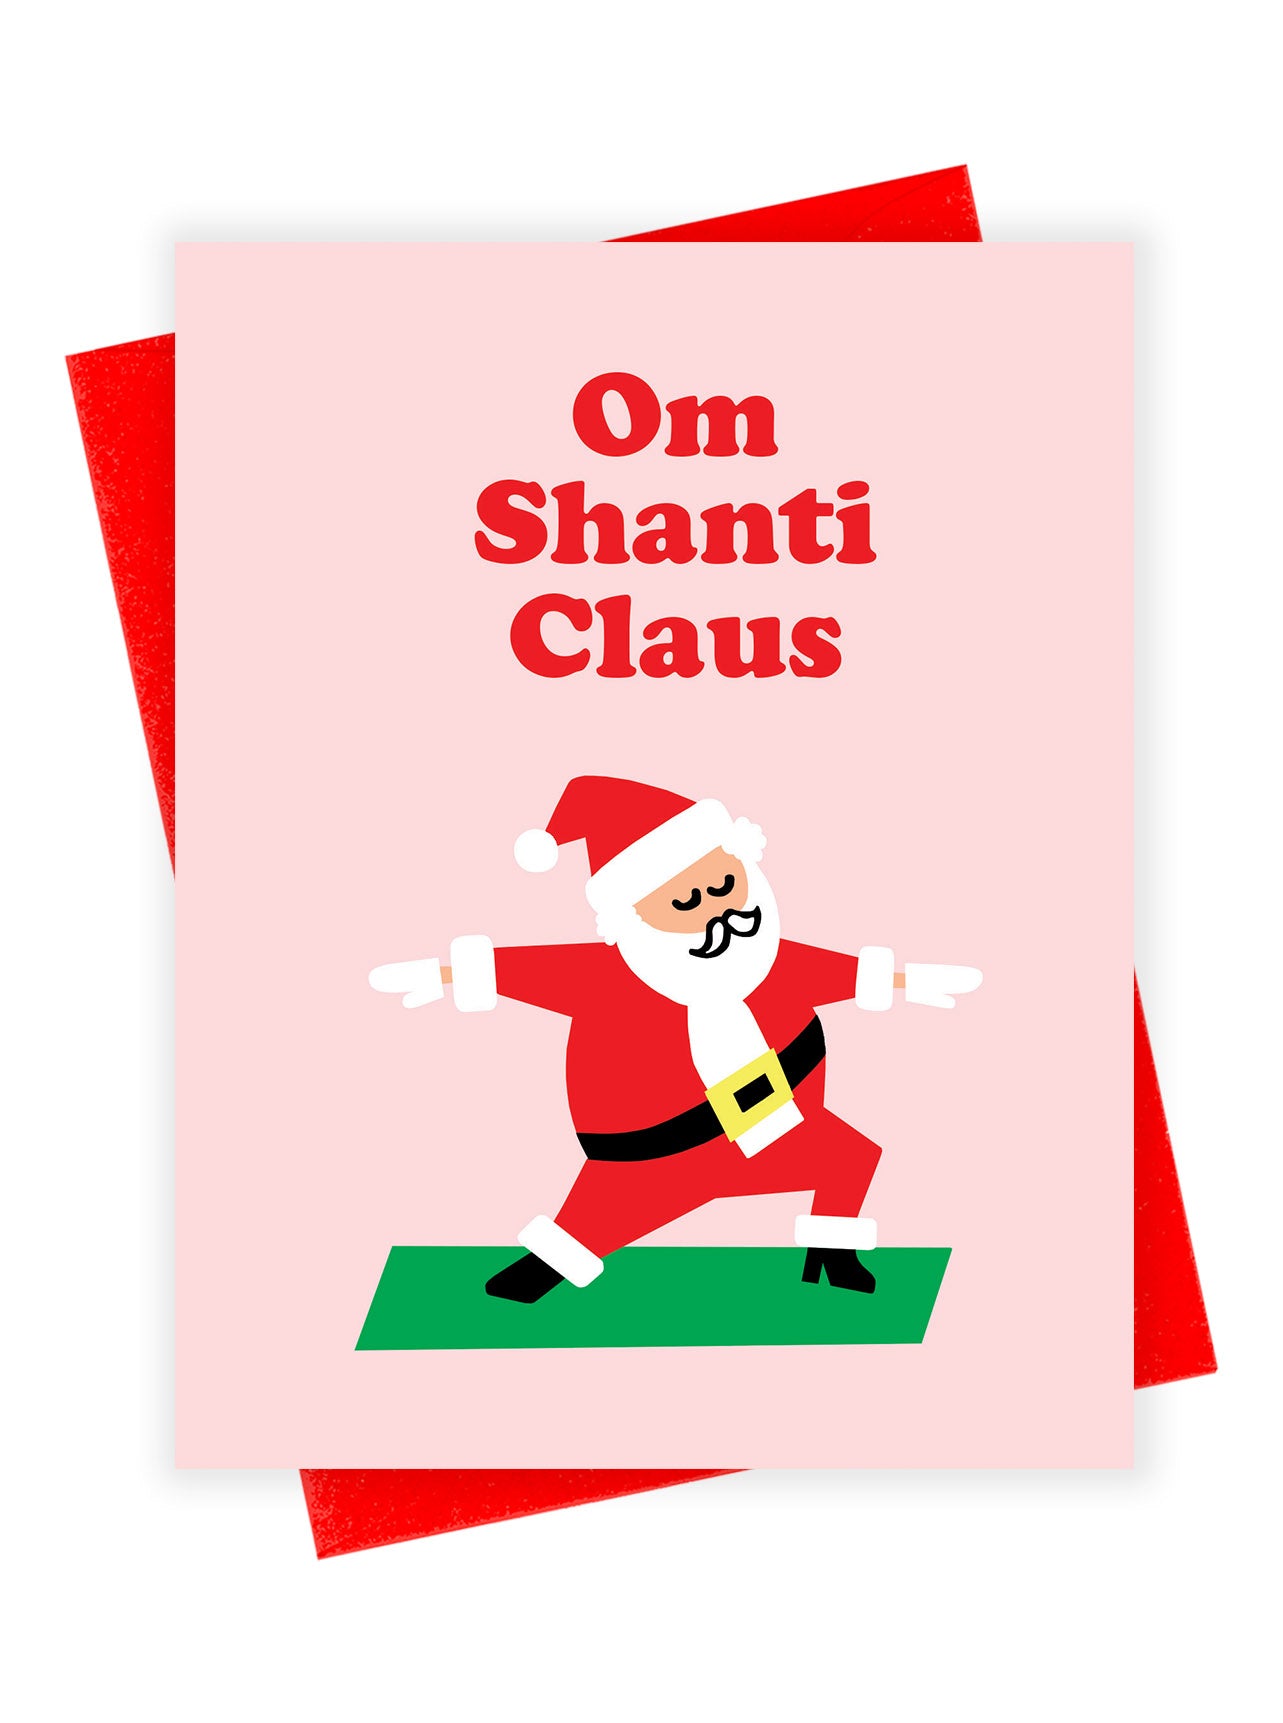 Shanti Claus